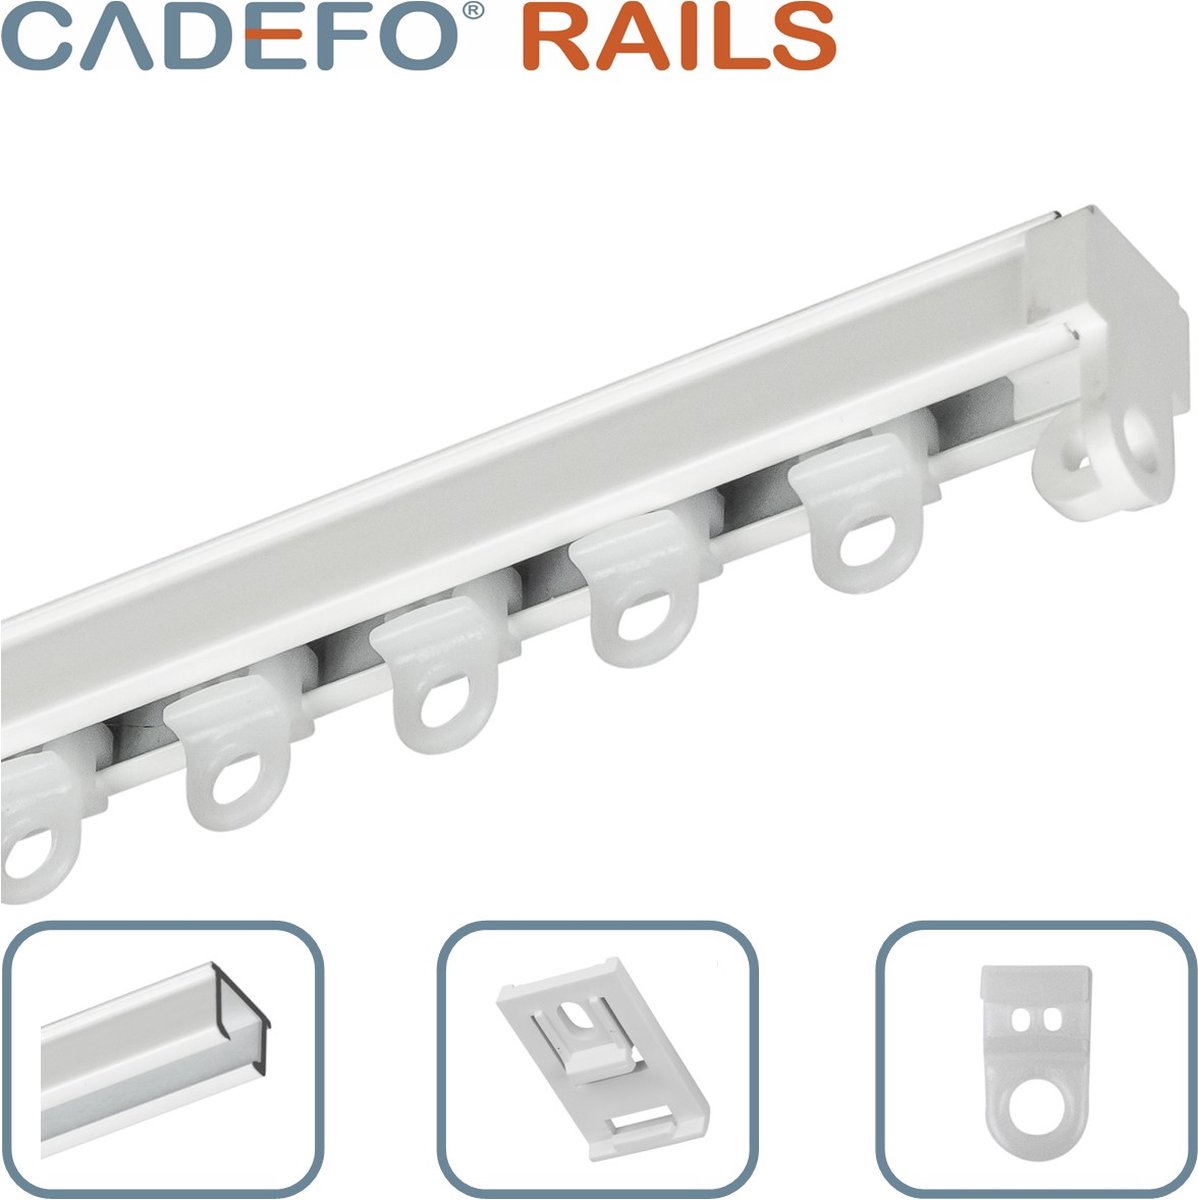 CADEFO RAILS (151 - 200 cm) Gordijnrails - Compleet op maat! - UIT 1 STUK - Leverbaar tot 6 meter - Plafondbevestiging - Lengte 166 cm